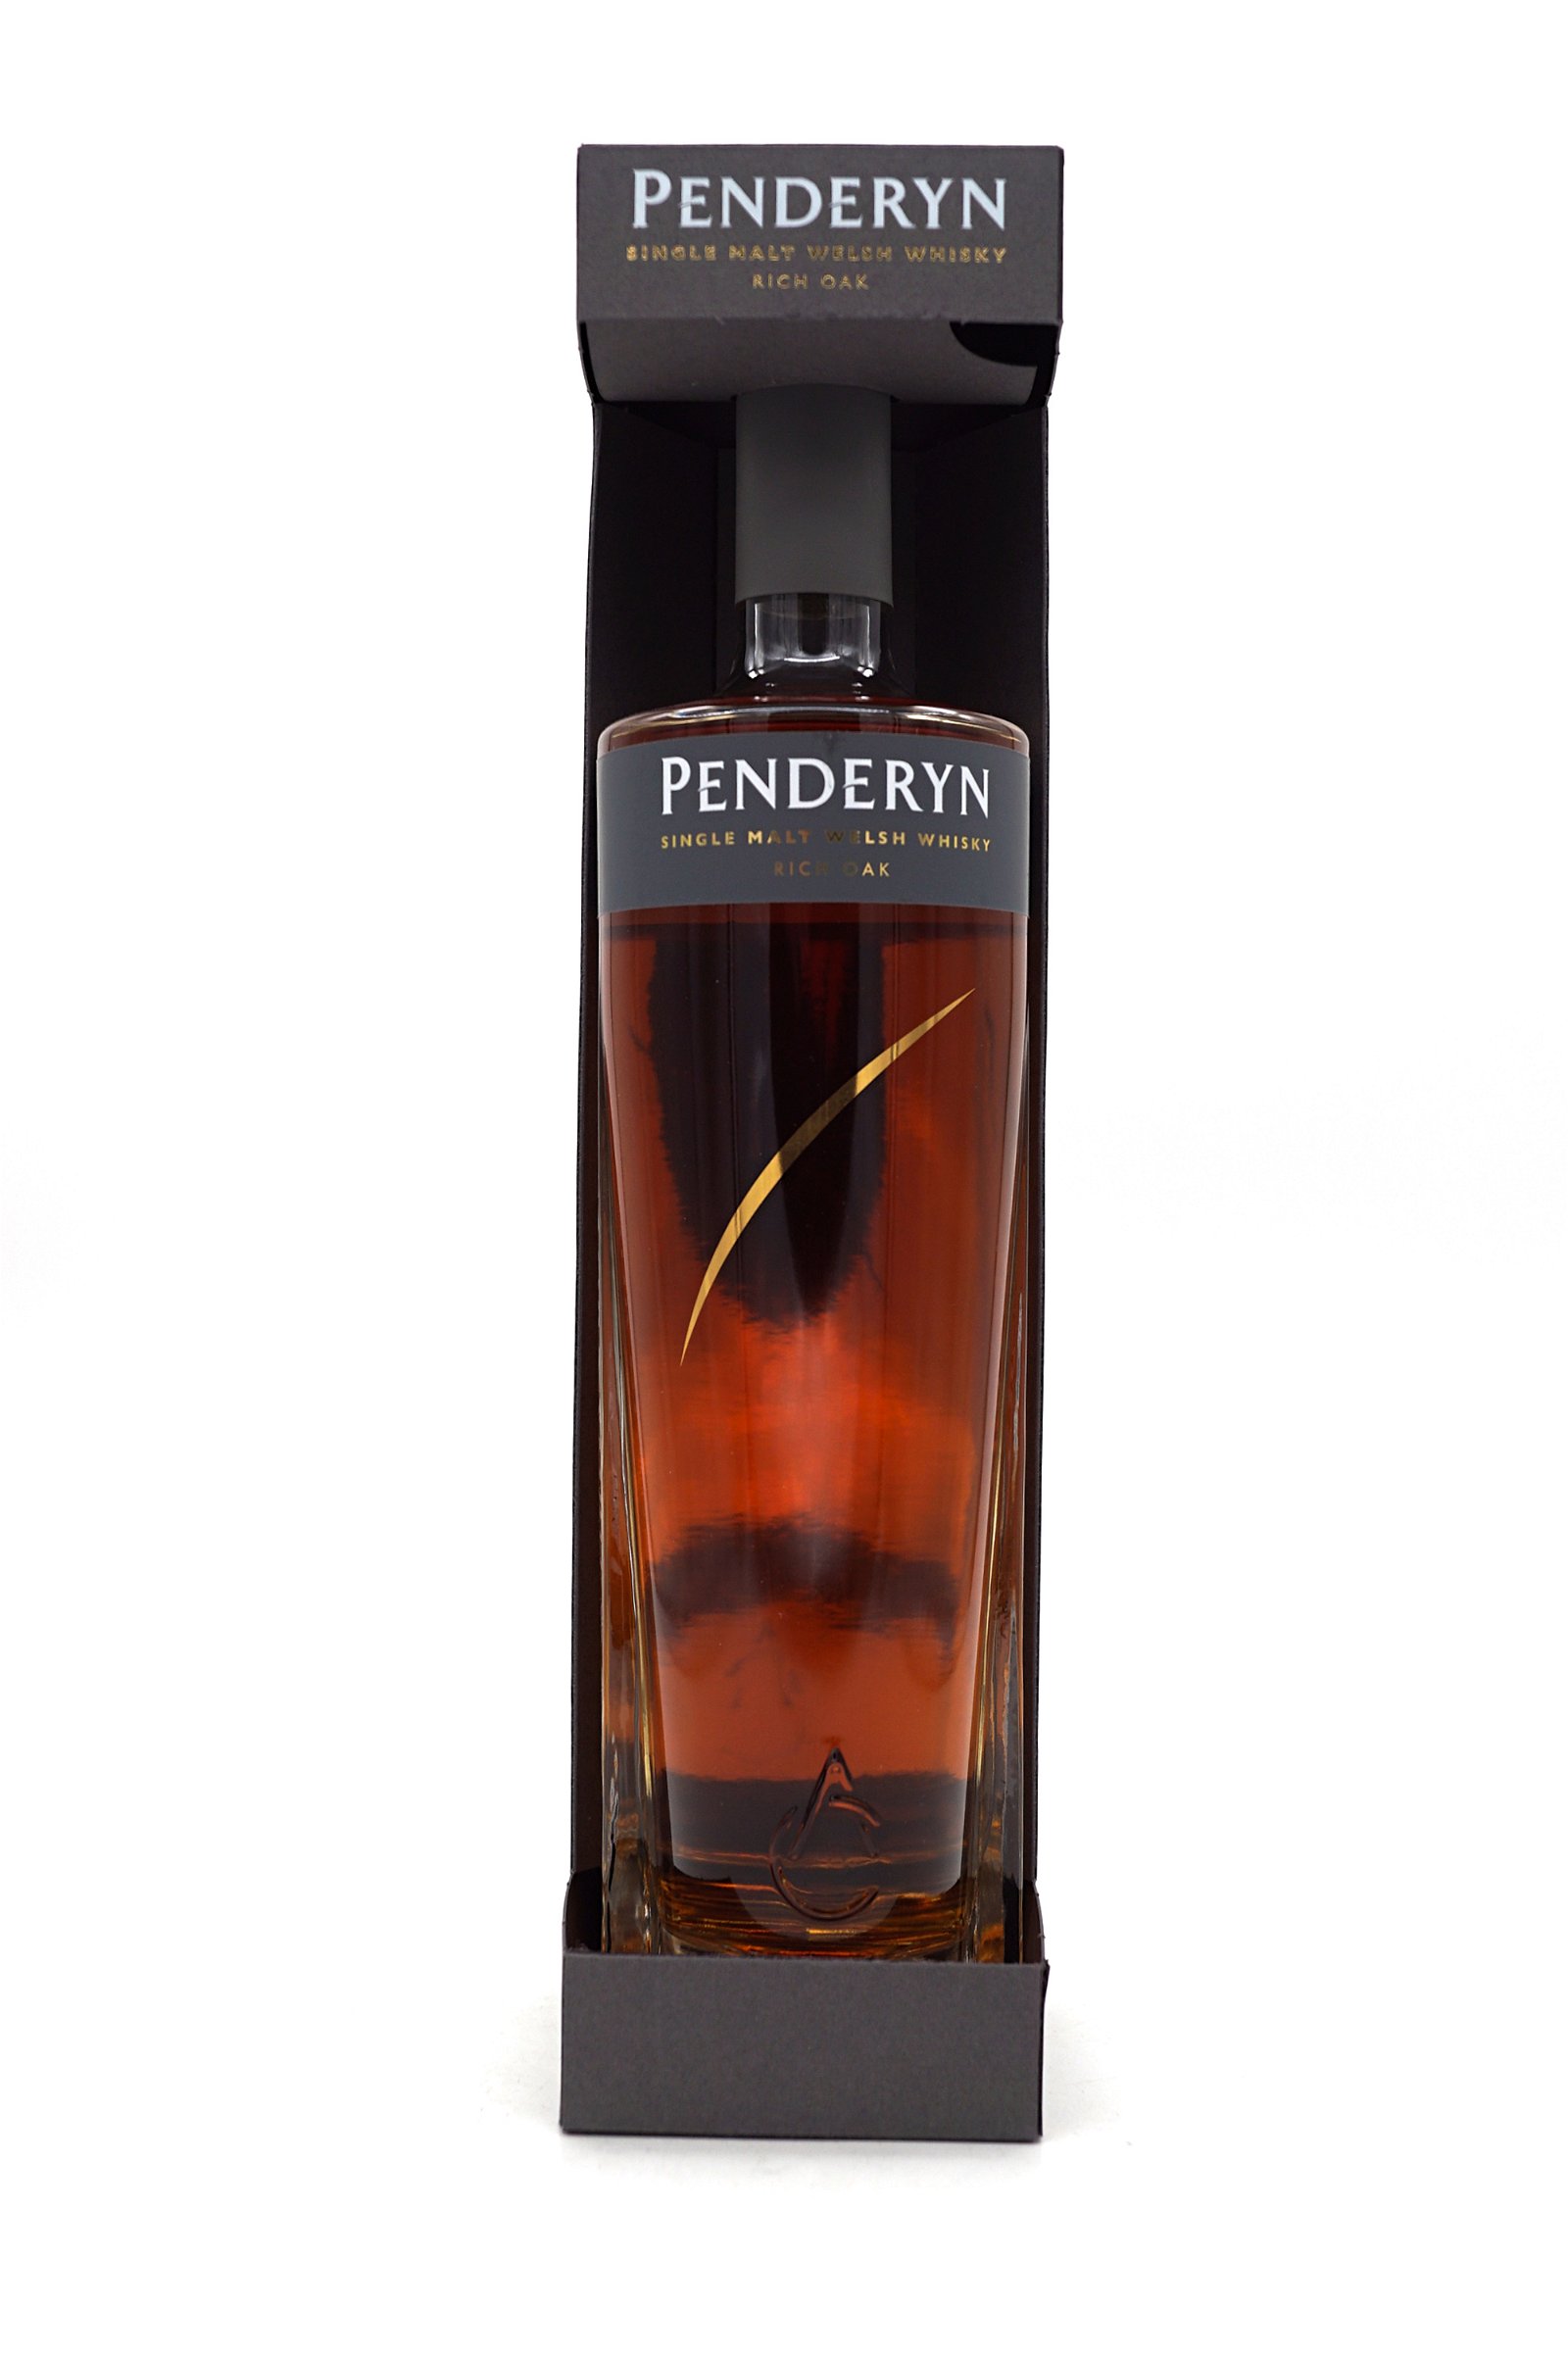 Penderyn Rich Oak Welsh Gold Single Malt Welsh Whisky